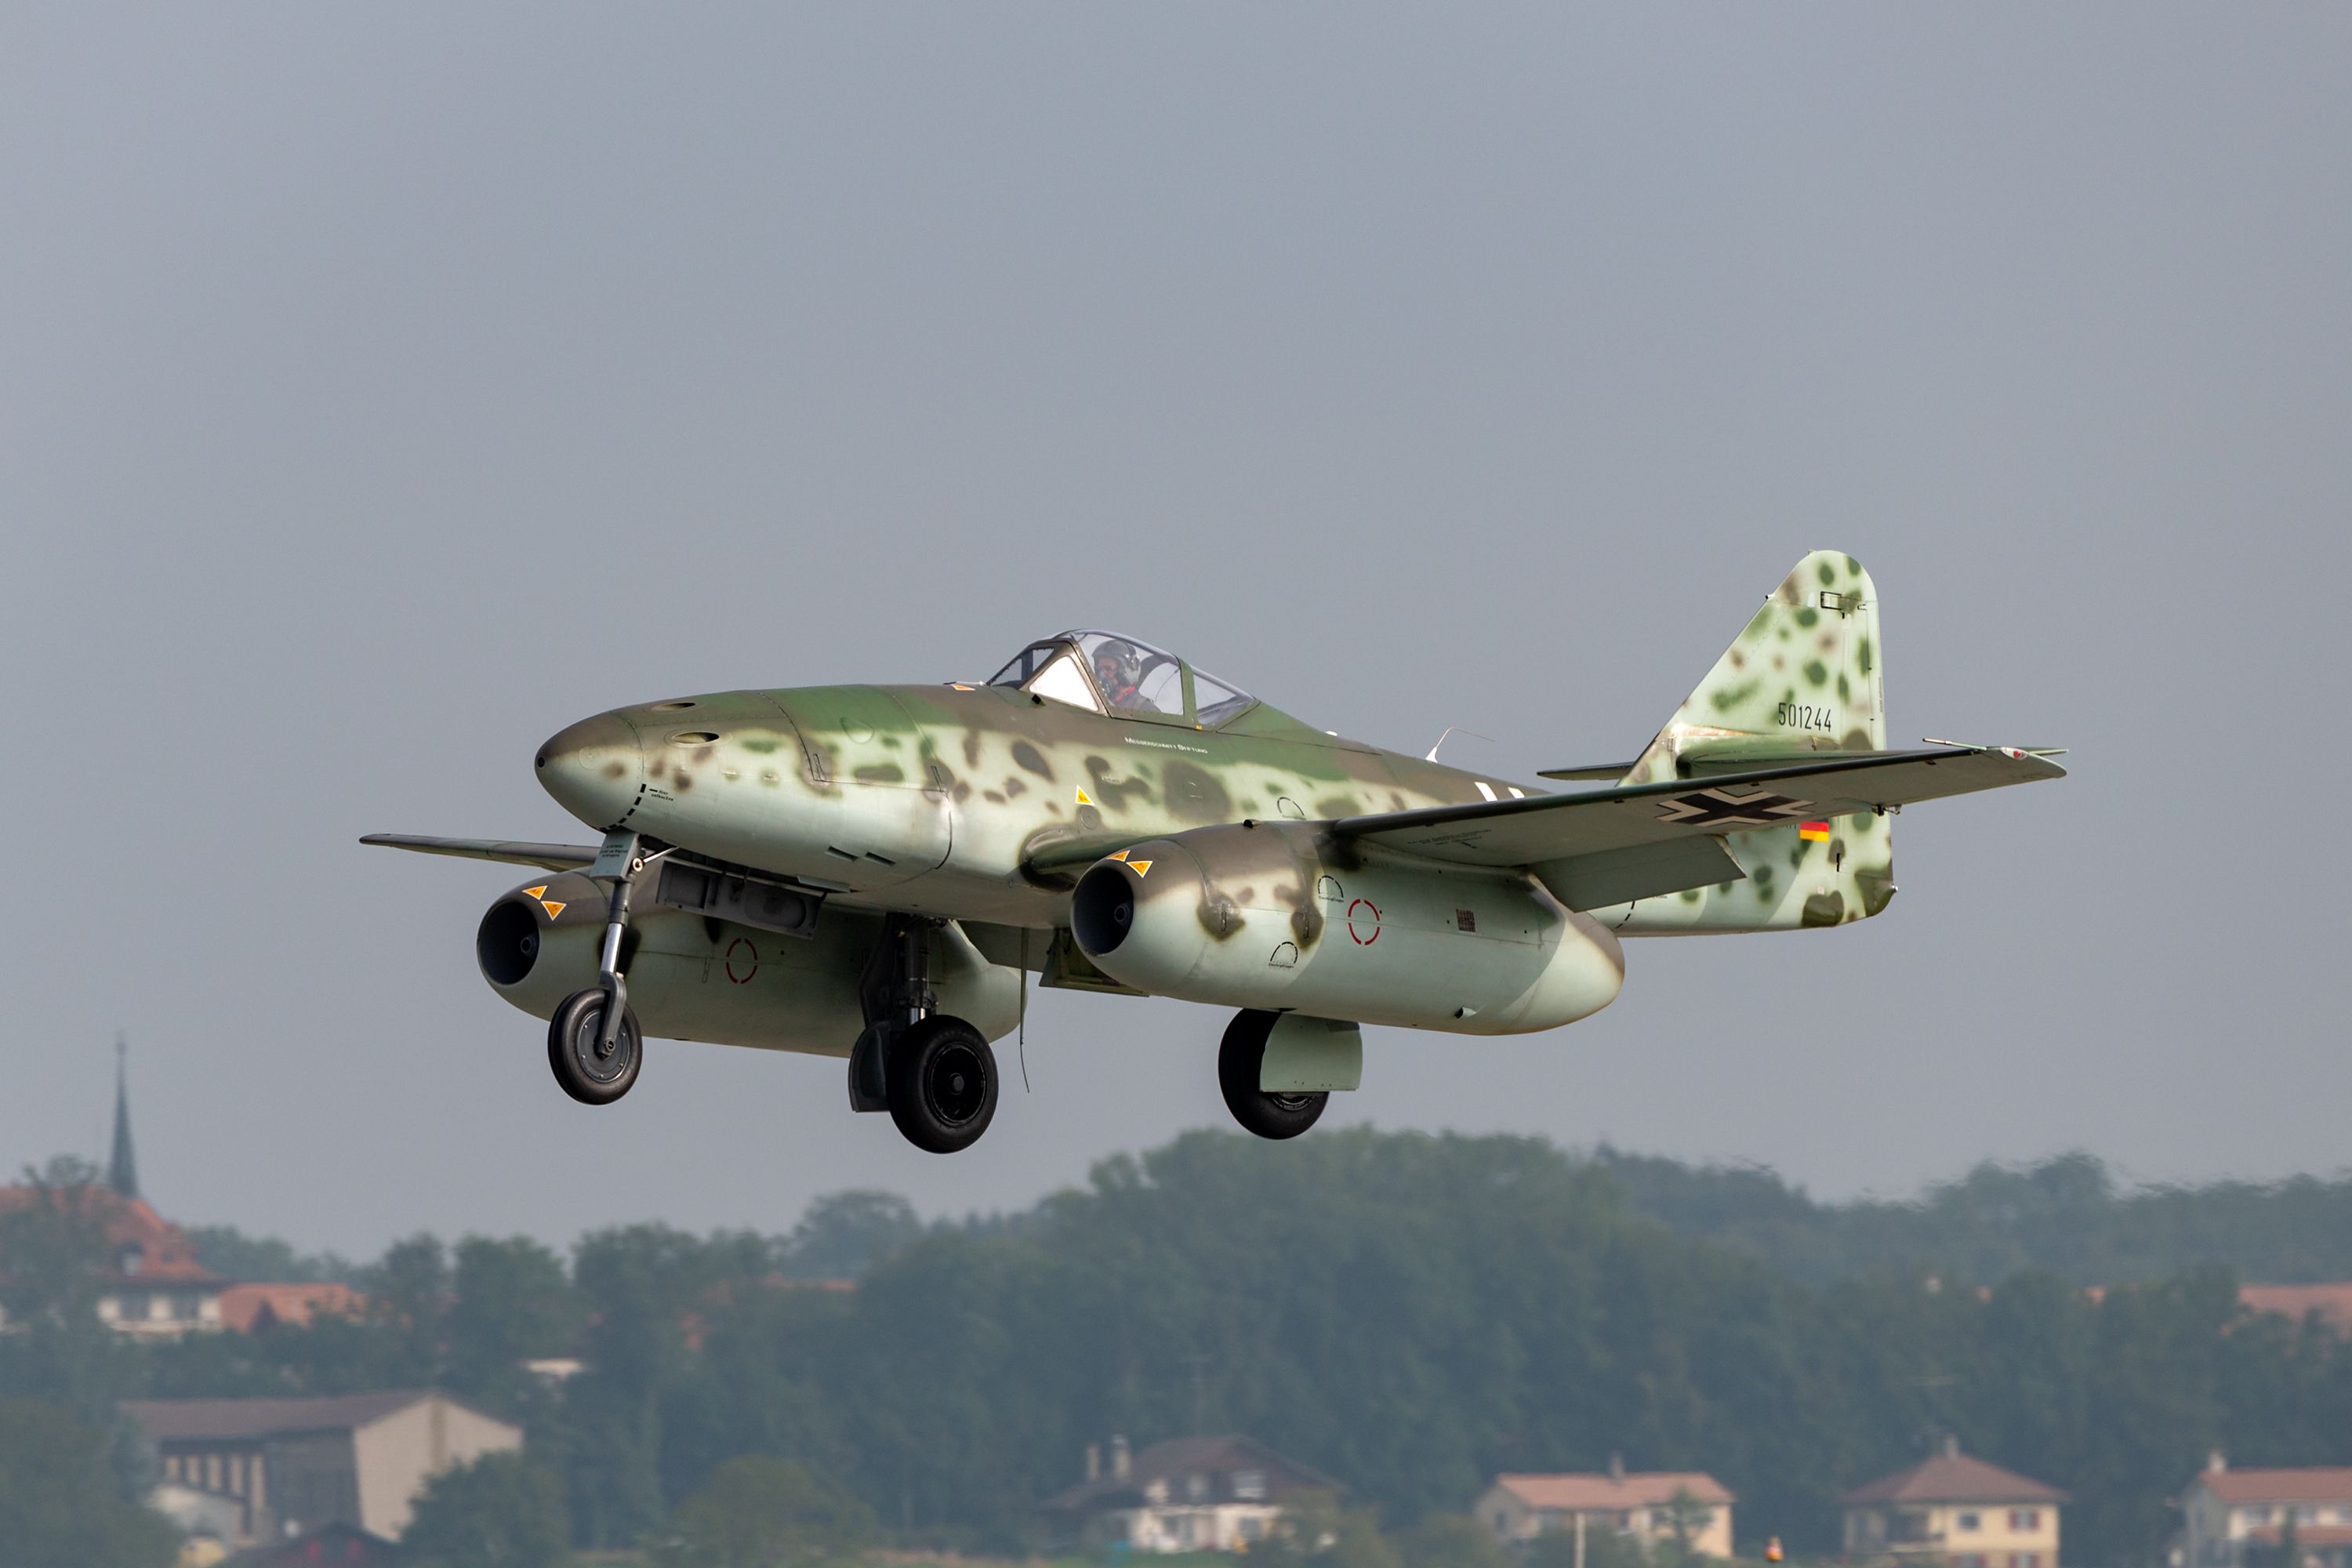 A Messerschmitt Me 262 Luftwaffe World War II jet fighter aircraft about to land.